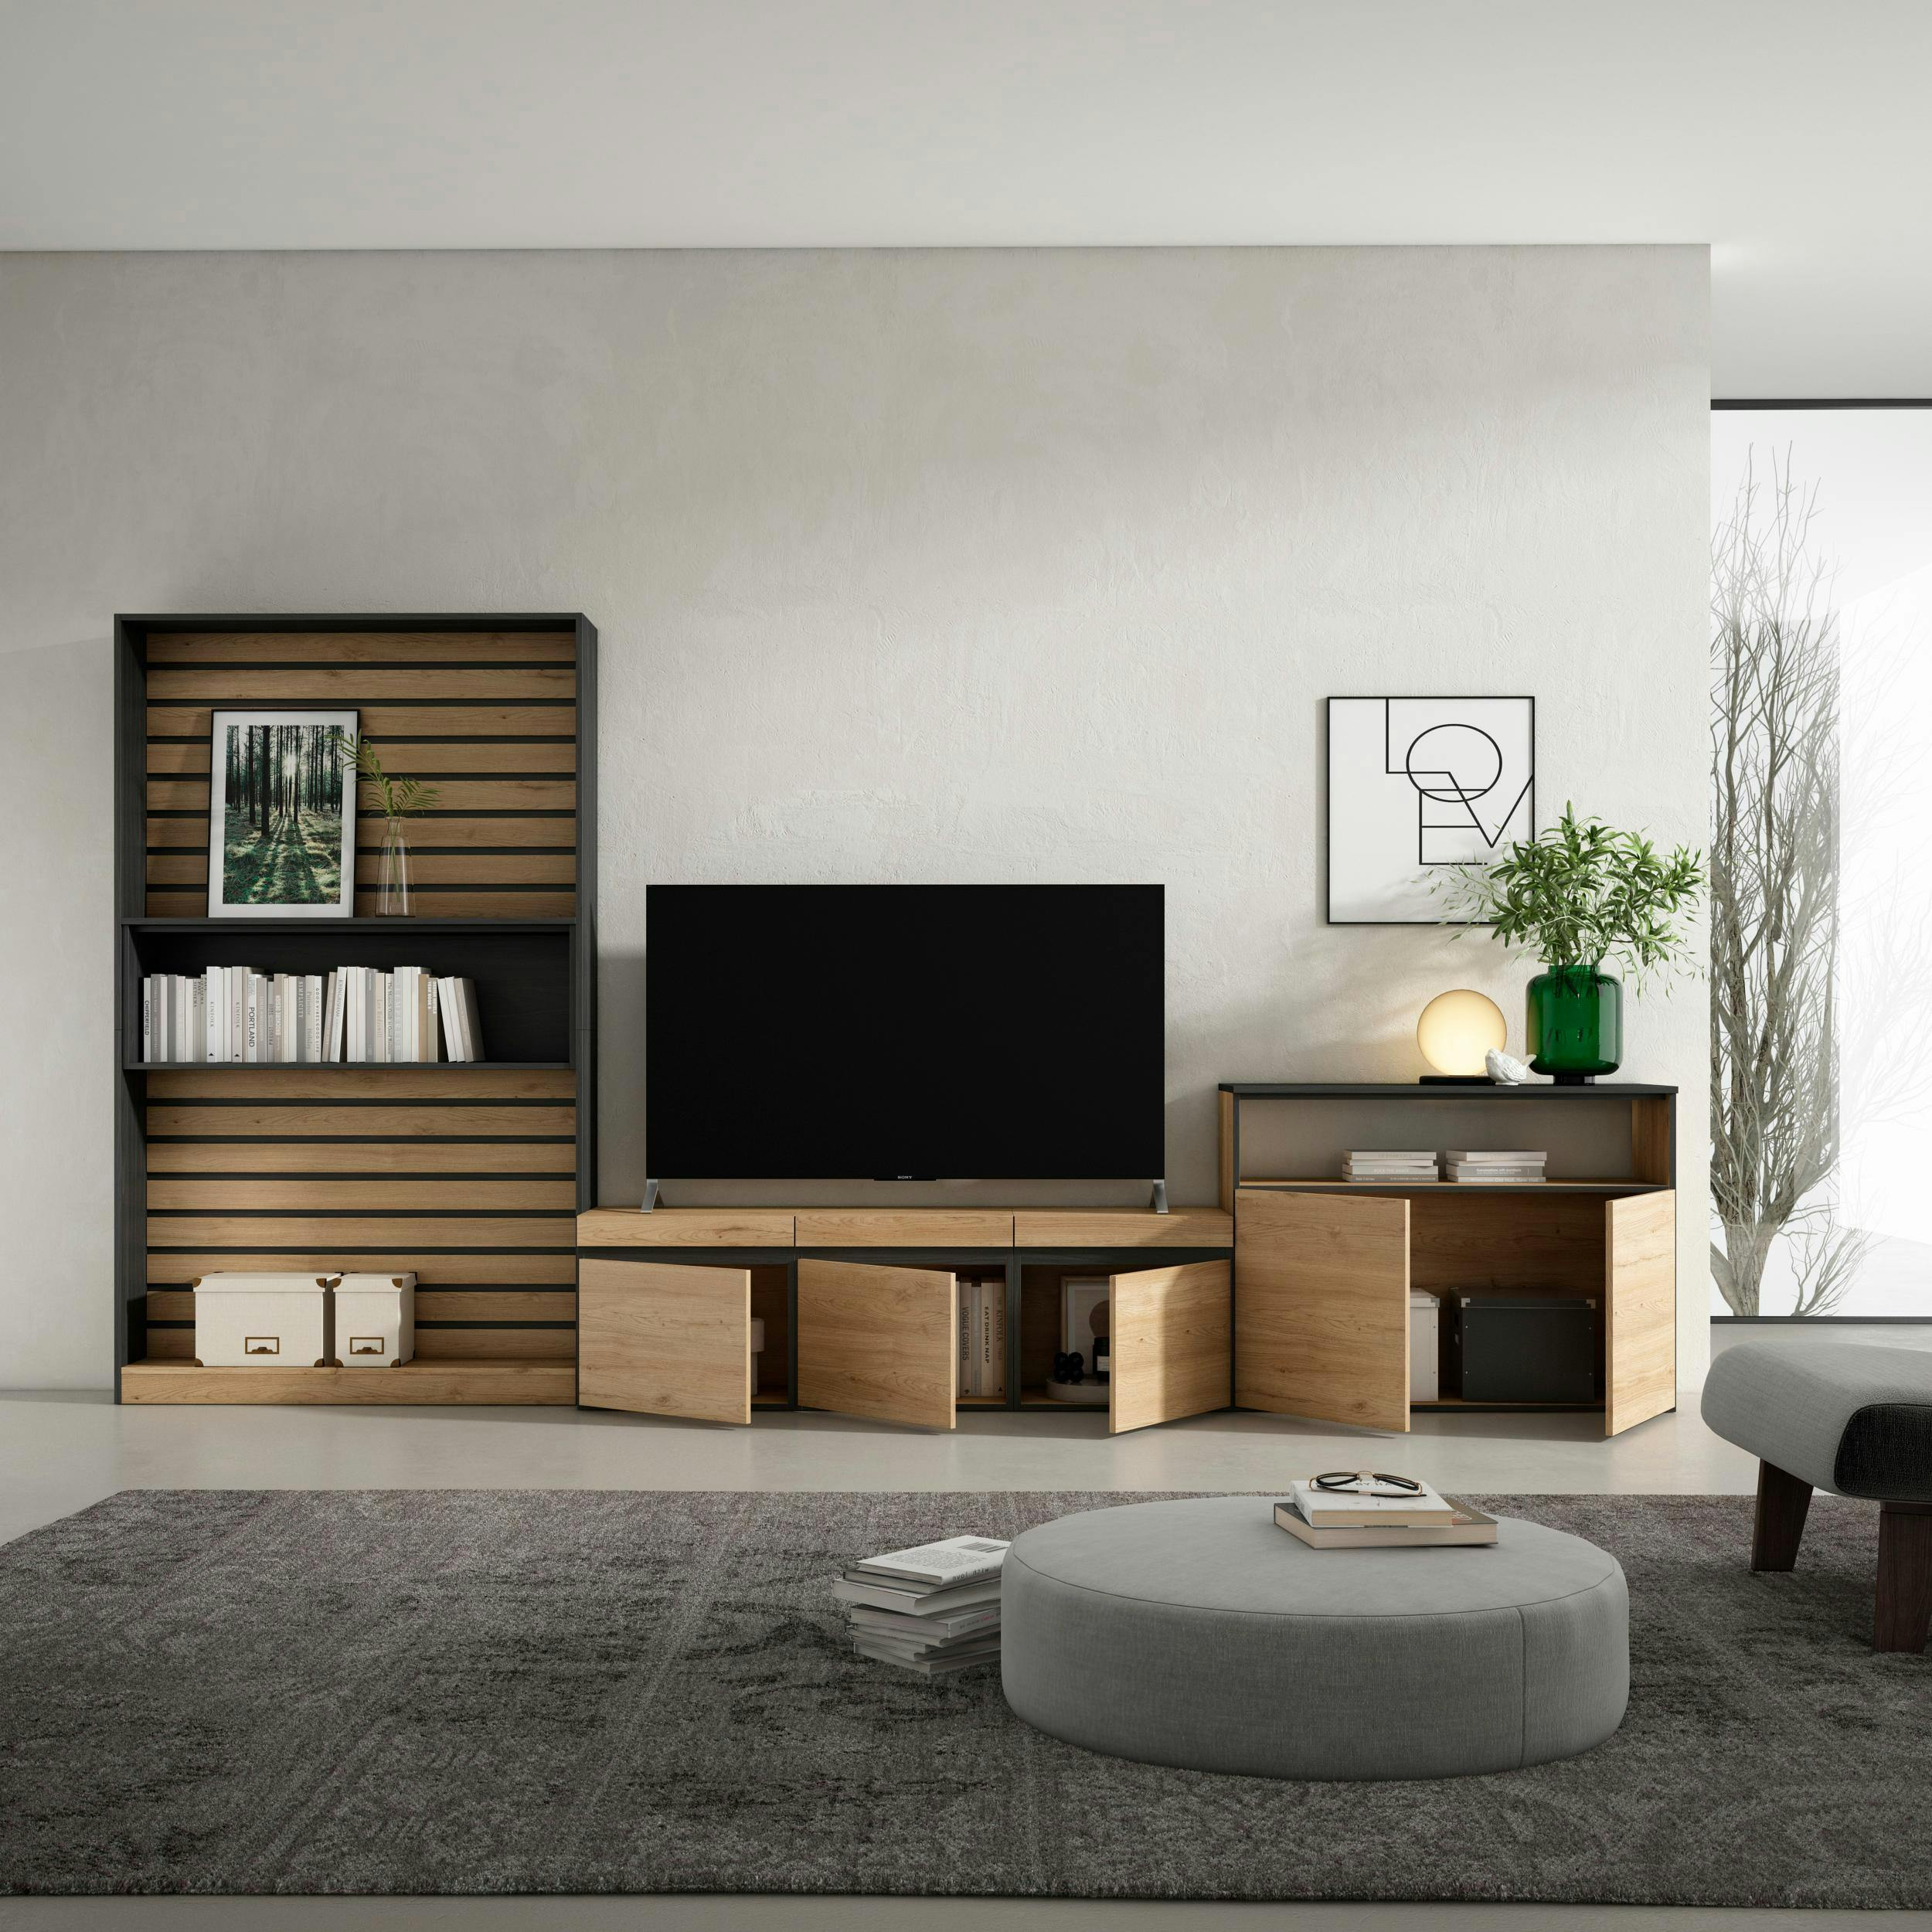 Muebles de Salón para TV, 320x186x35cm, Chimenea eléctrica, Blanco